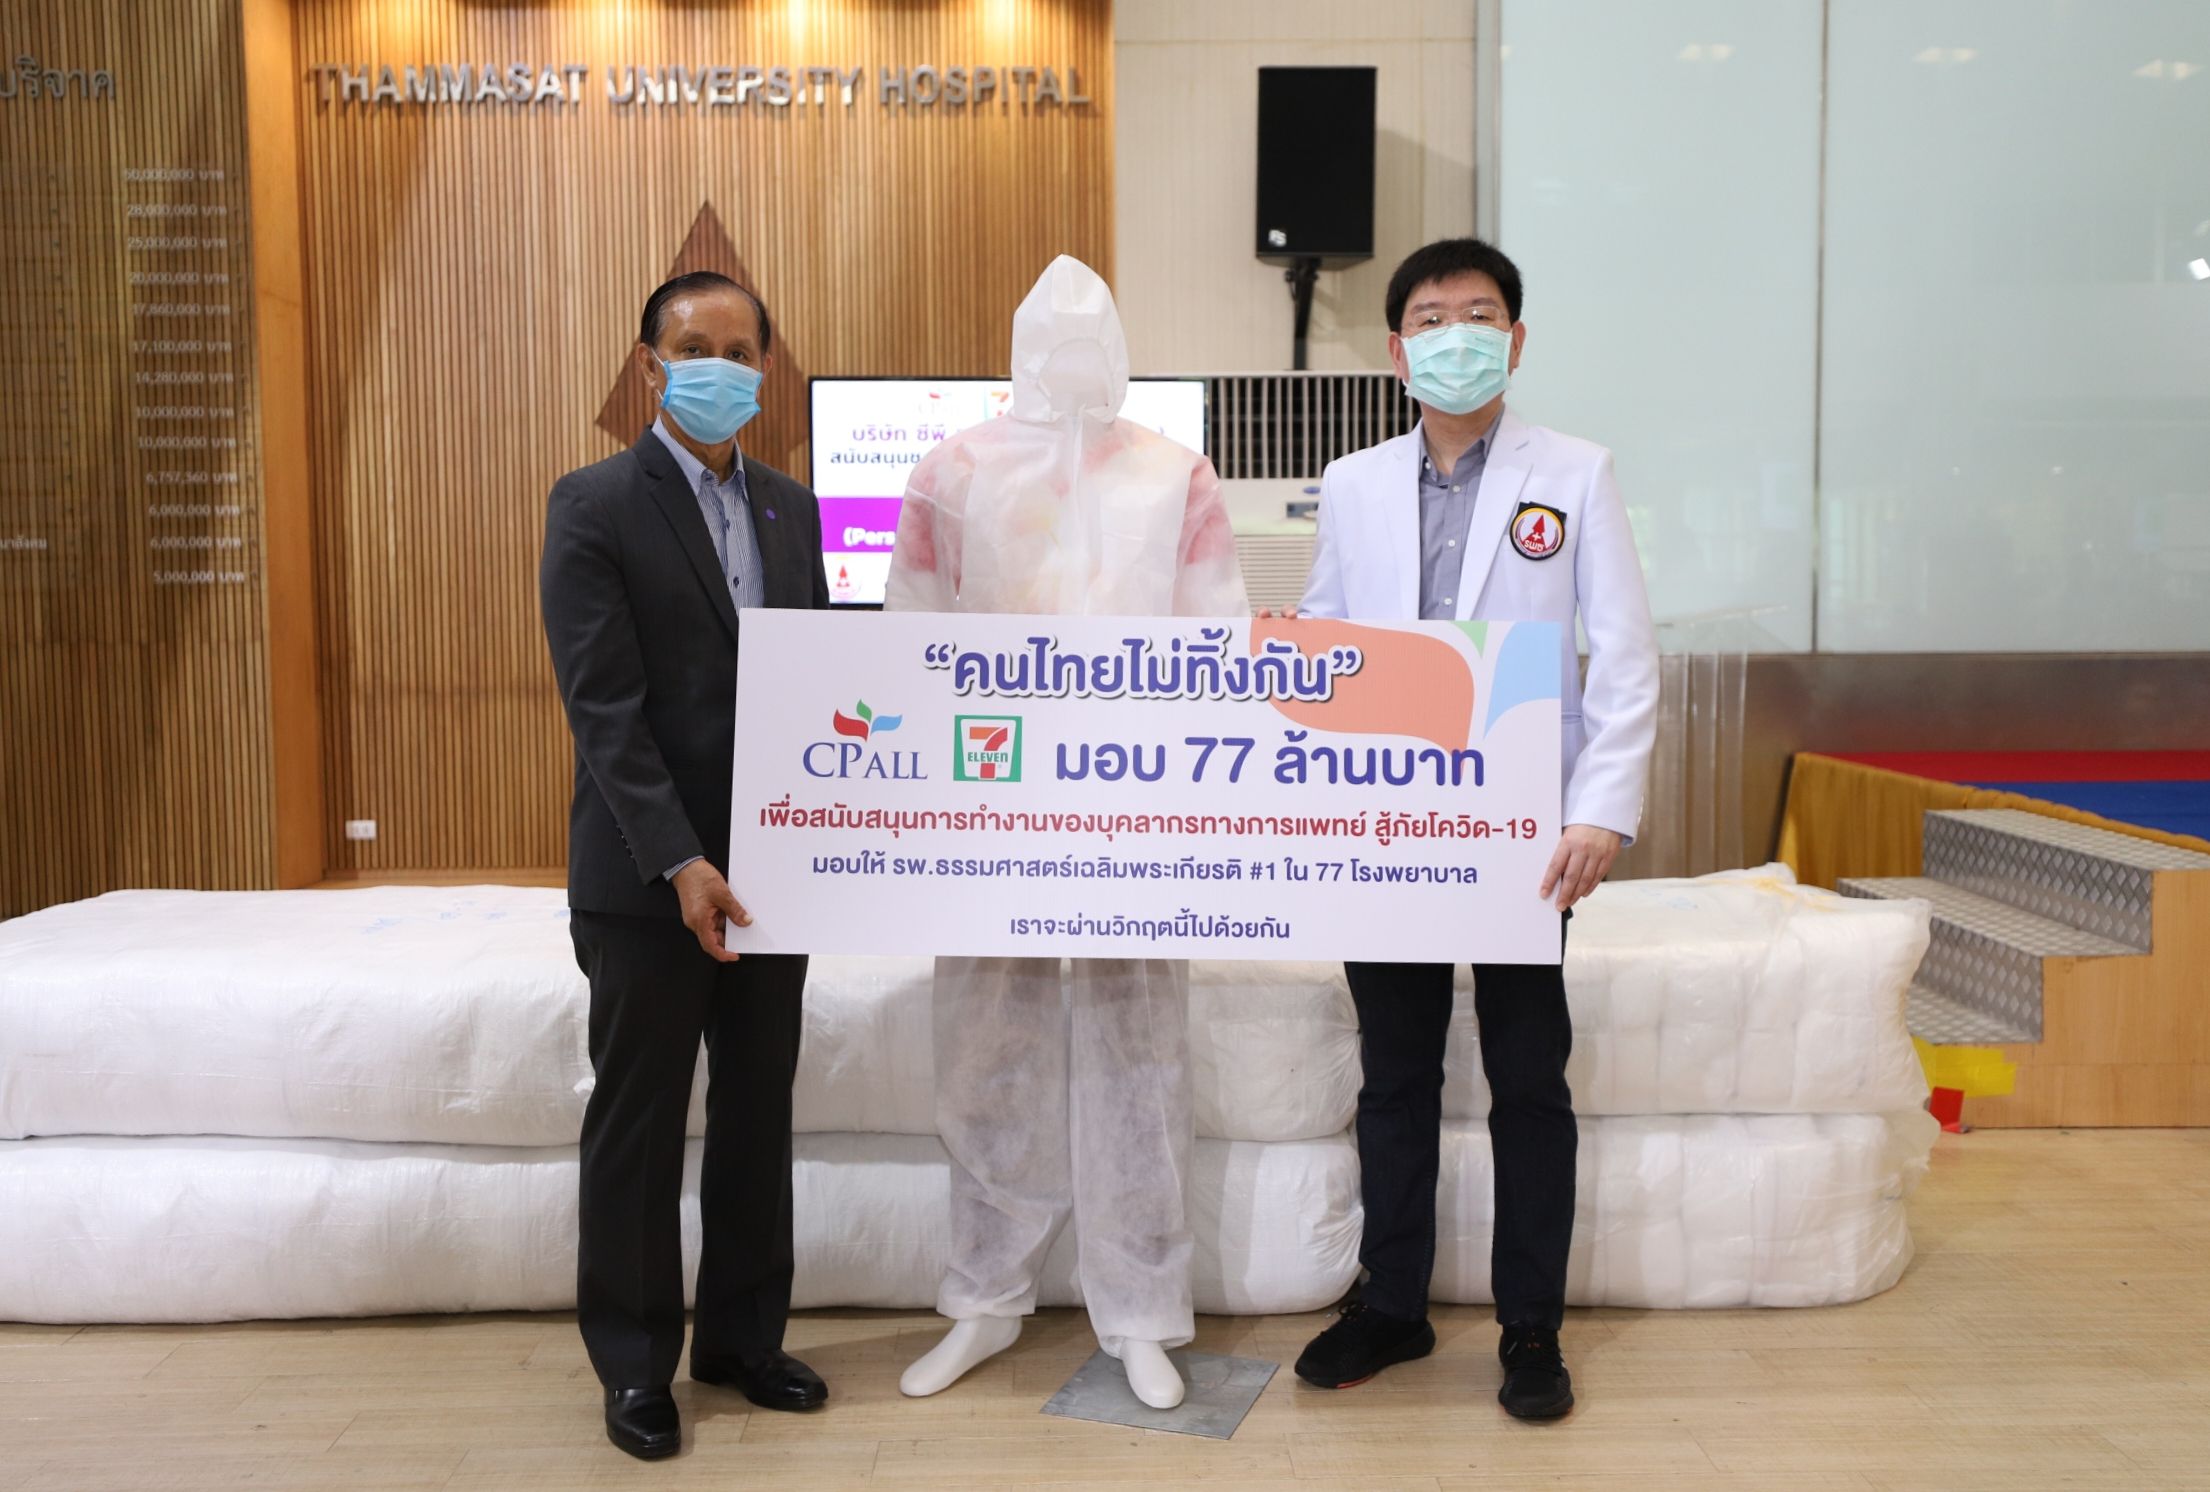 ซีพี ออลล์ ผุดโครงการ คนไทยไม่ทิ้งกัน มอบ 77 ล้านบาทให้กับ 77 รพ.ทั่วประเทศ สู้ภัยไวรัส COVID-19